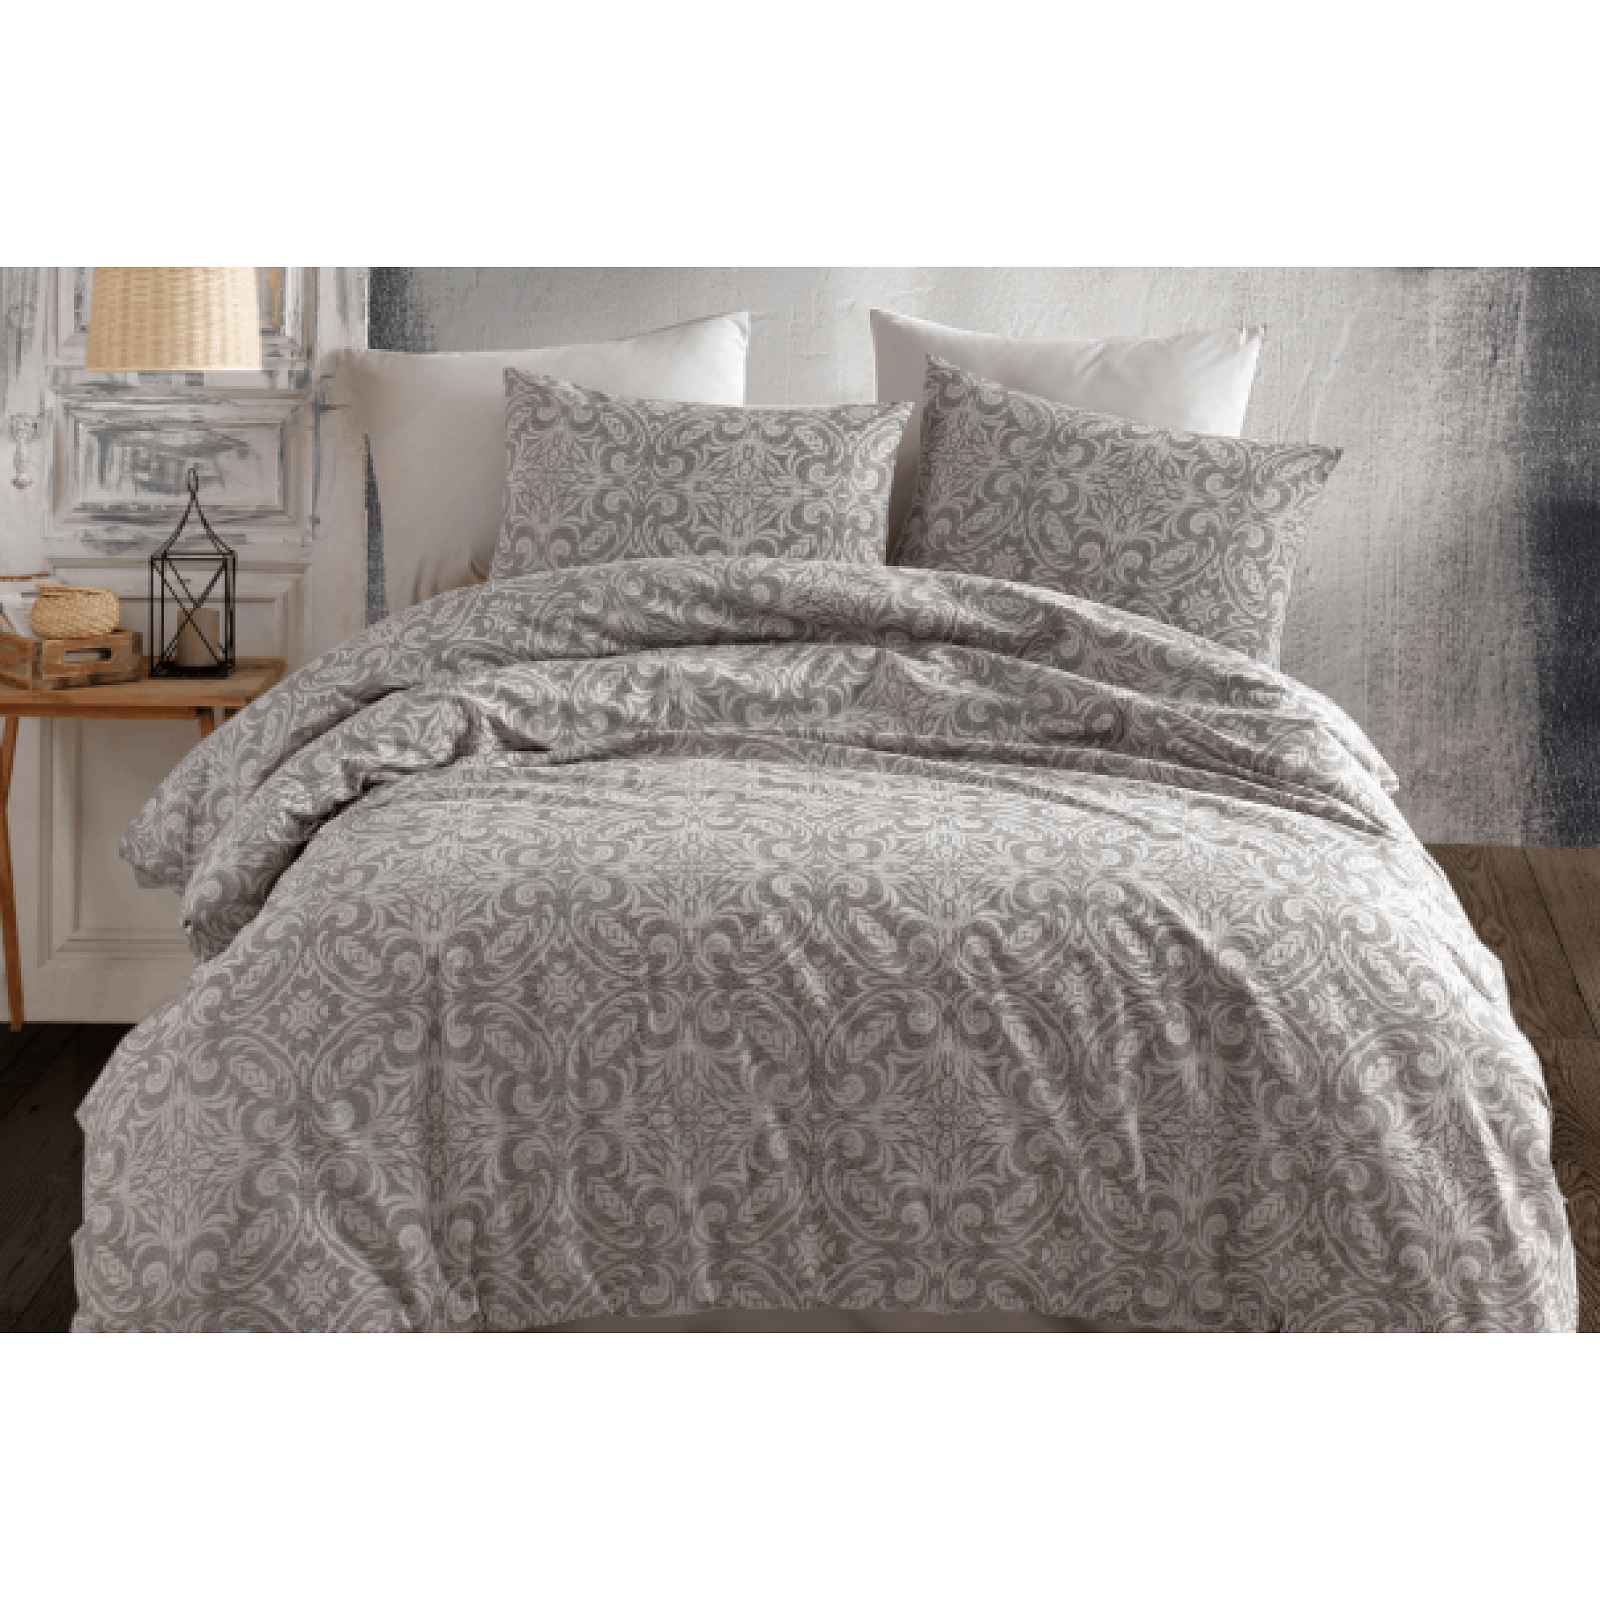 Klinmam Home povlečení Titania V1 Grey z Renforcé bavlny, šedé s ornamentálním vzorem, 140x200 cm + 90x70 cm